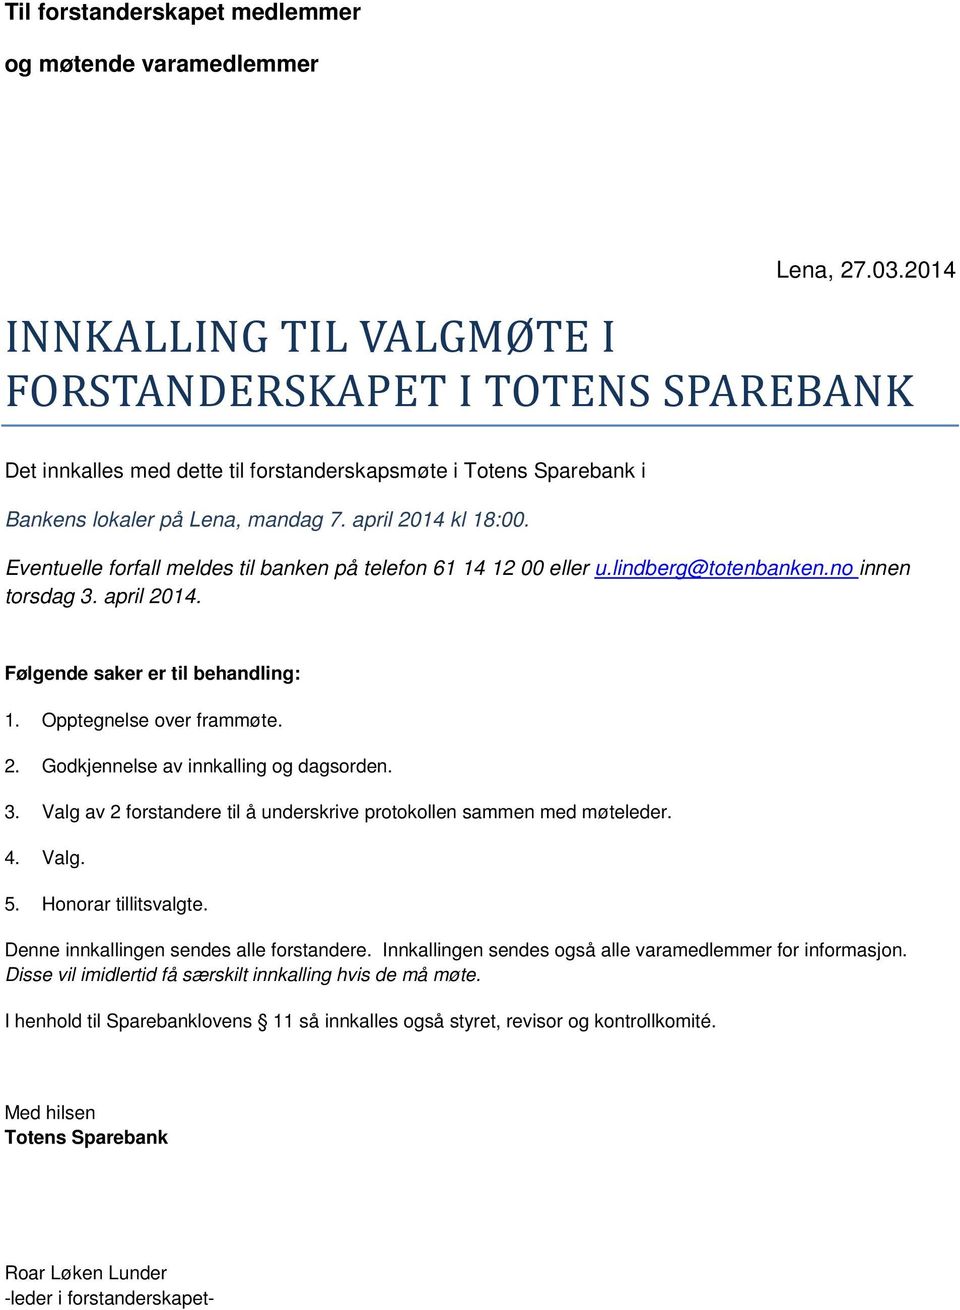 Eventuelle forfall meldes til banken på telefon 61 14 12 00 eller u.lindberg@totenbanken.no innen torsdag 3. april 2014. Følgende saker er til behandling: 1. Opptegnelse over frammøte. 2. Godkjennelse av innkalling og dagsorden.